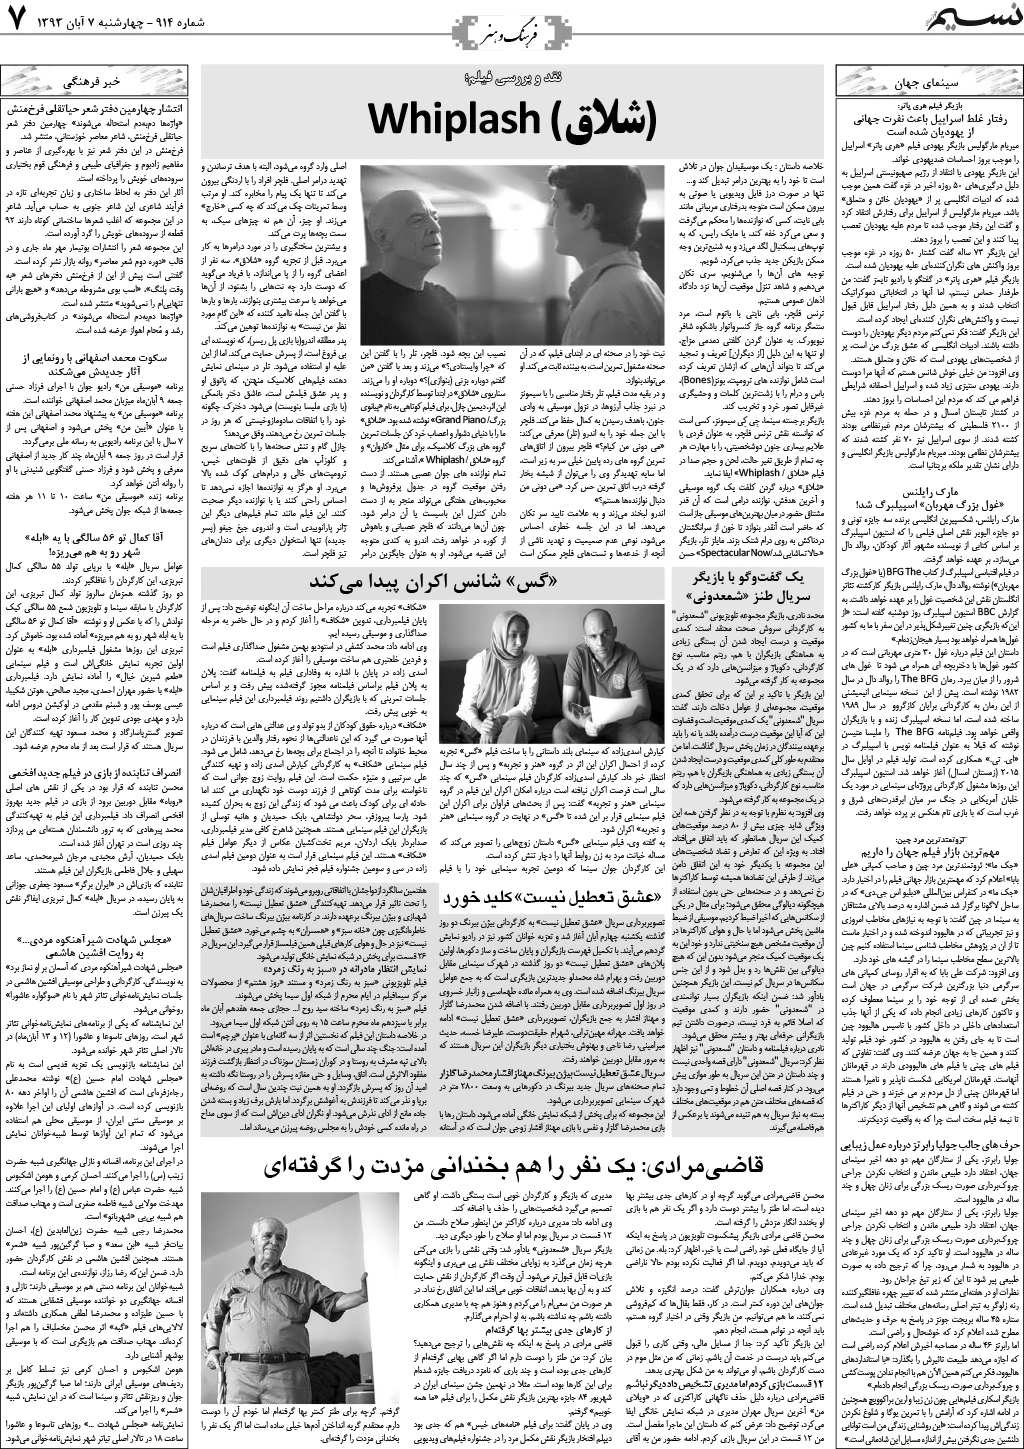 صفحه فرهنگ و هنر روزنامه نسیم شماره 914